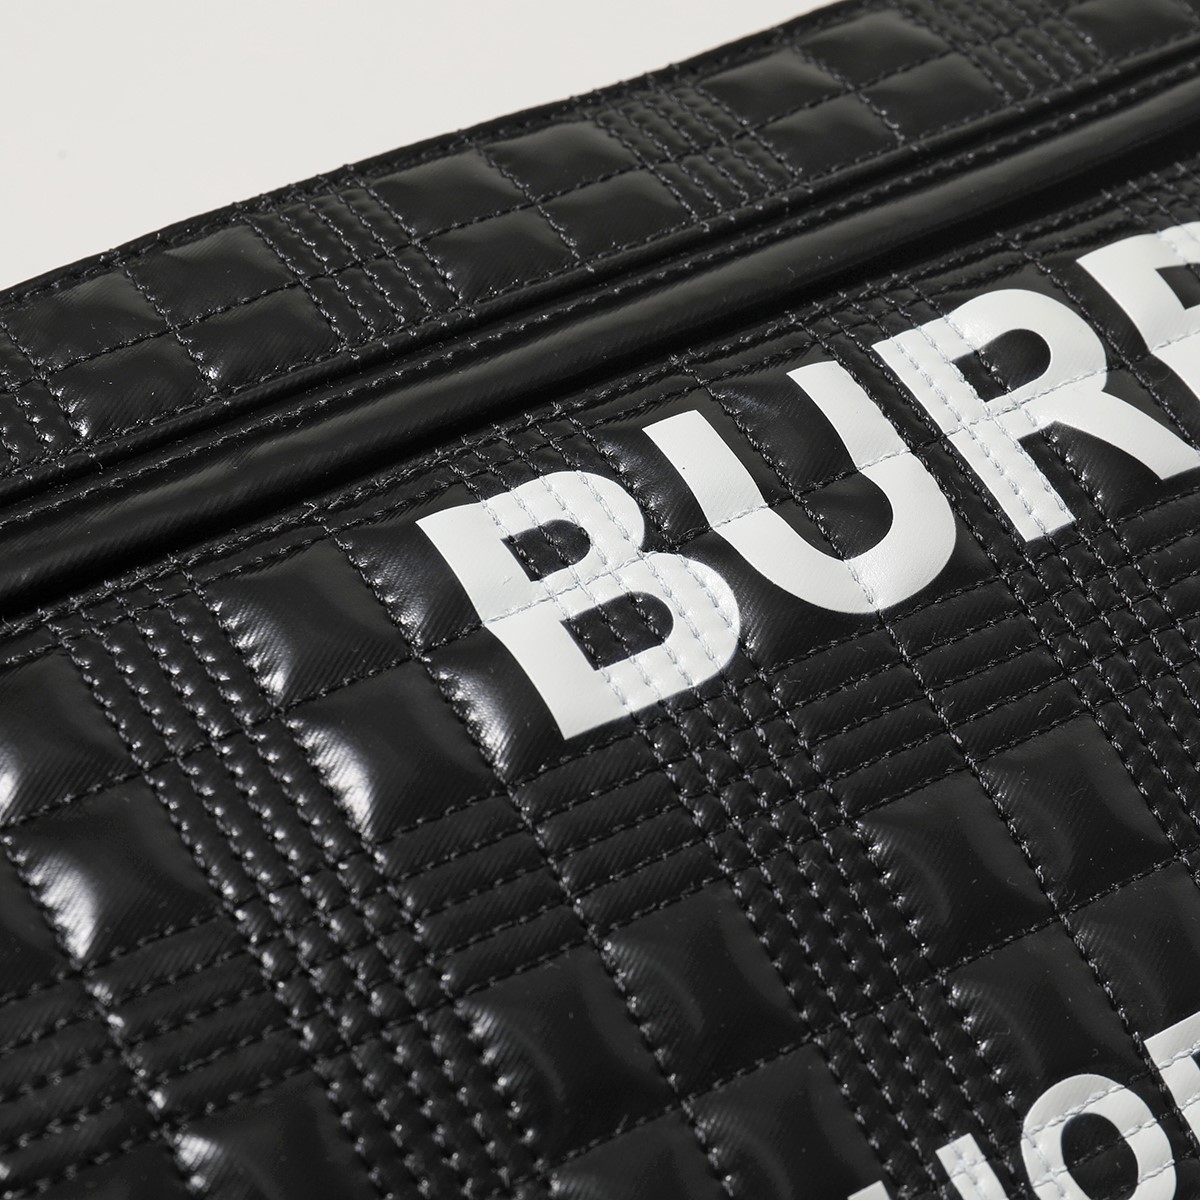 BURBERRY バーバリー 8028160 レザー エナメル ボディバッグ ベルトバッグ ウエストポーチ バムバッグ ロゴ 鞄  A1189/BLACK メンズ | インポートセレクト musee